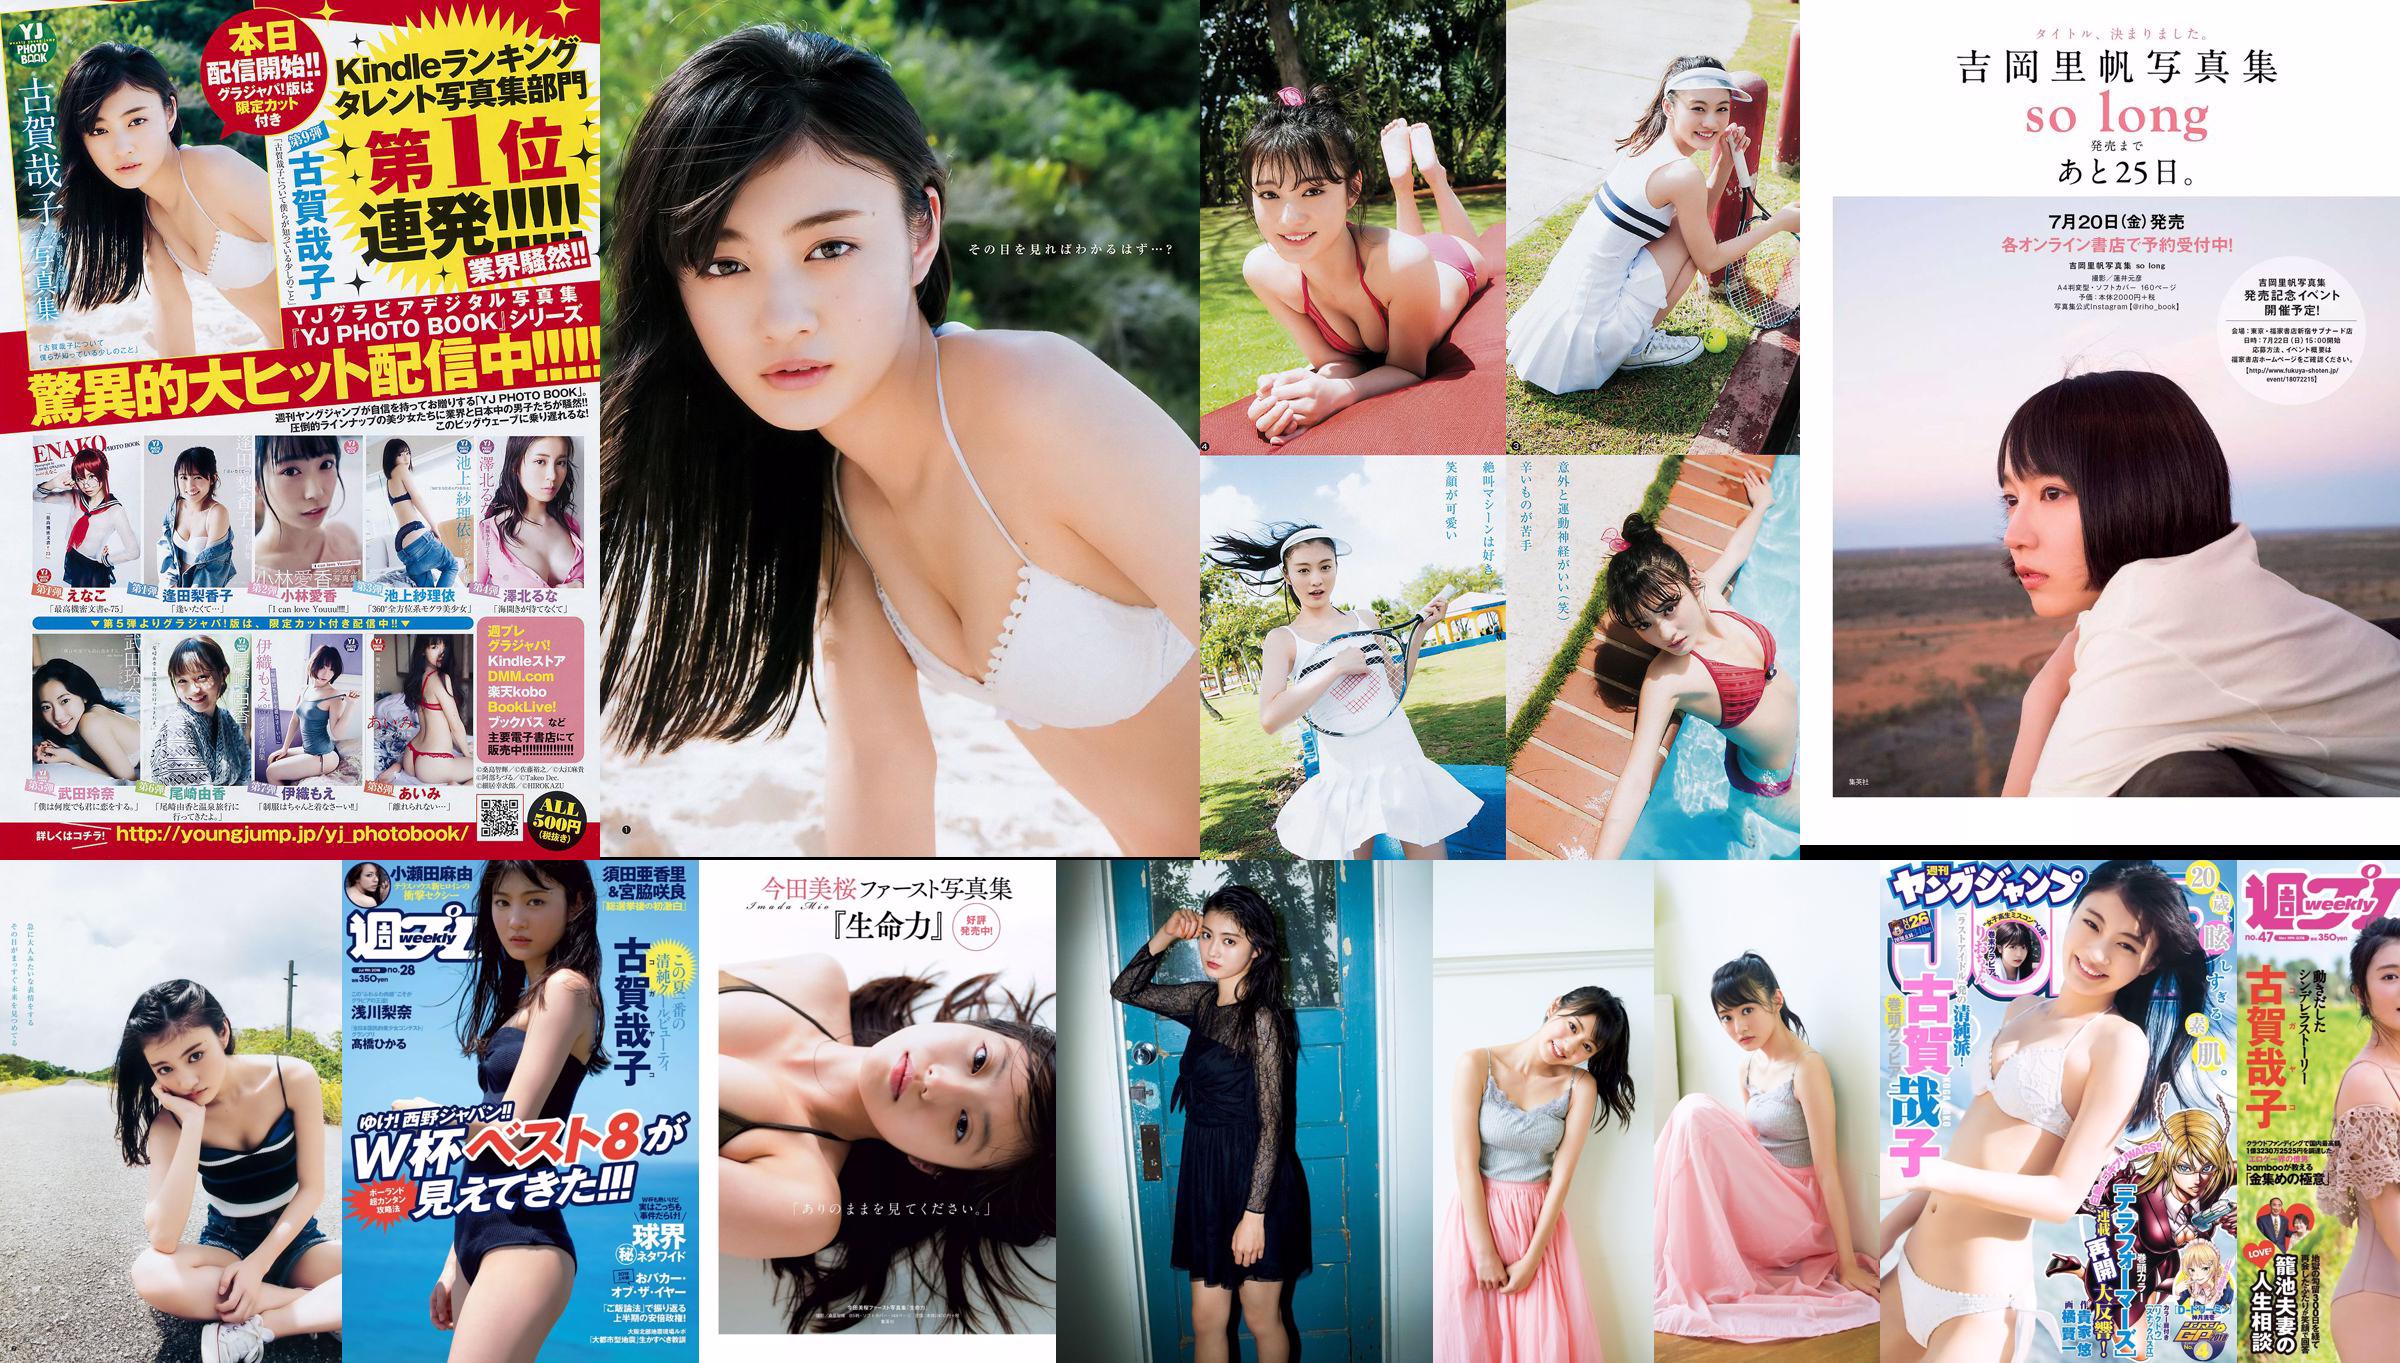 Yoshiko Koga Riochon [Wekelijkse Young Jump] nr. 26 fotomagazine in 2018 No.12928a Pagina 6